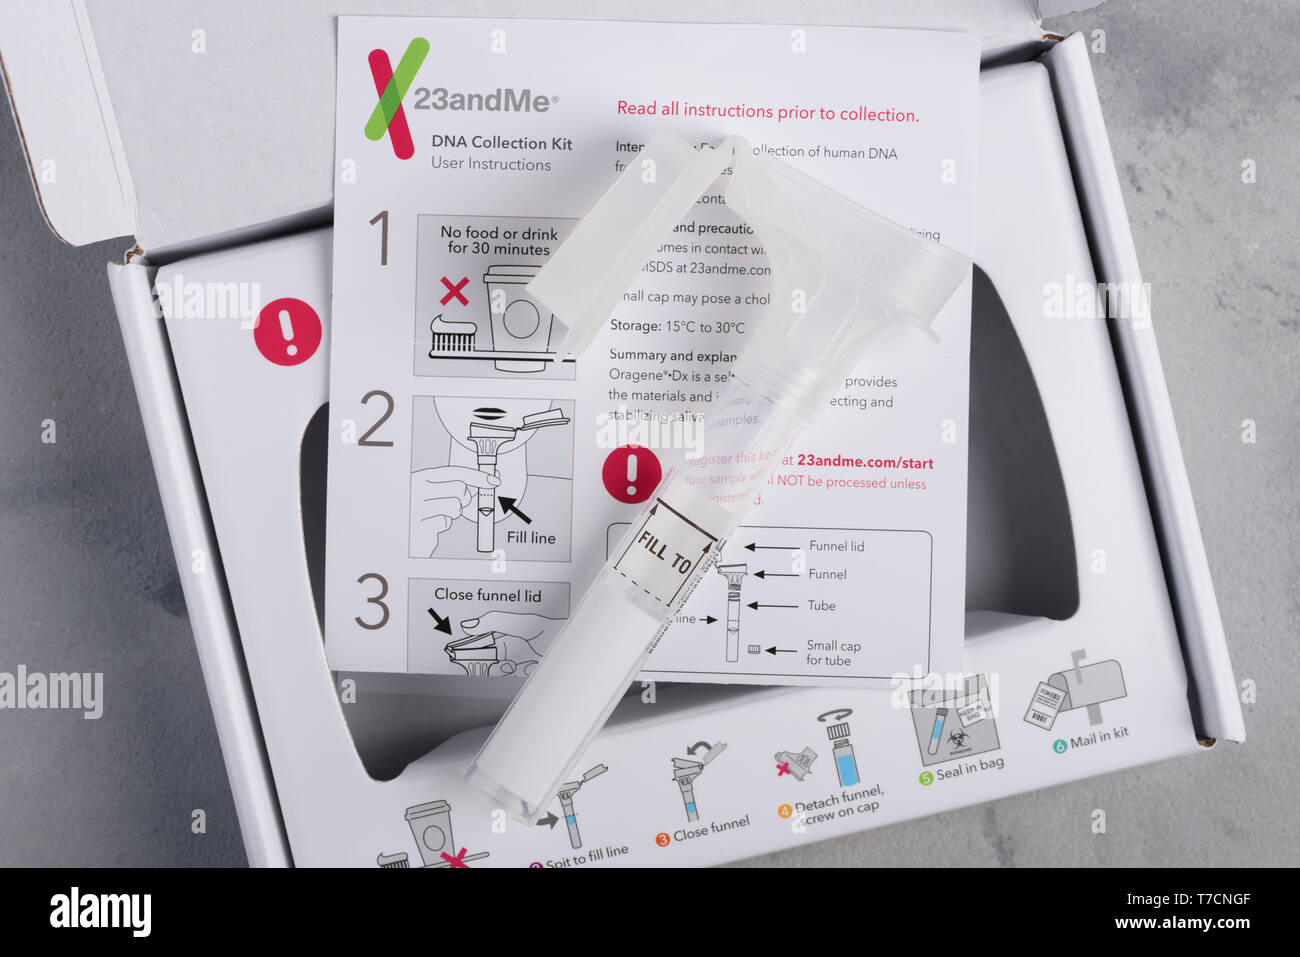 Kiev, Ukraine - 17 octobre 2018 : 23andMe personal ancestry test génétique, kit de prélèvement de salive avec tube, fort et instructions. Rédaction d'illustration Banque D'Images